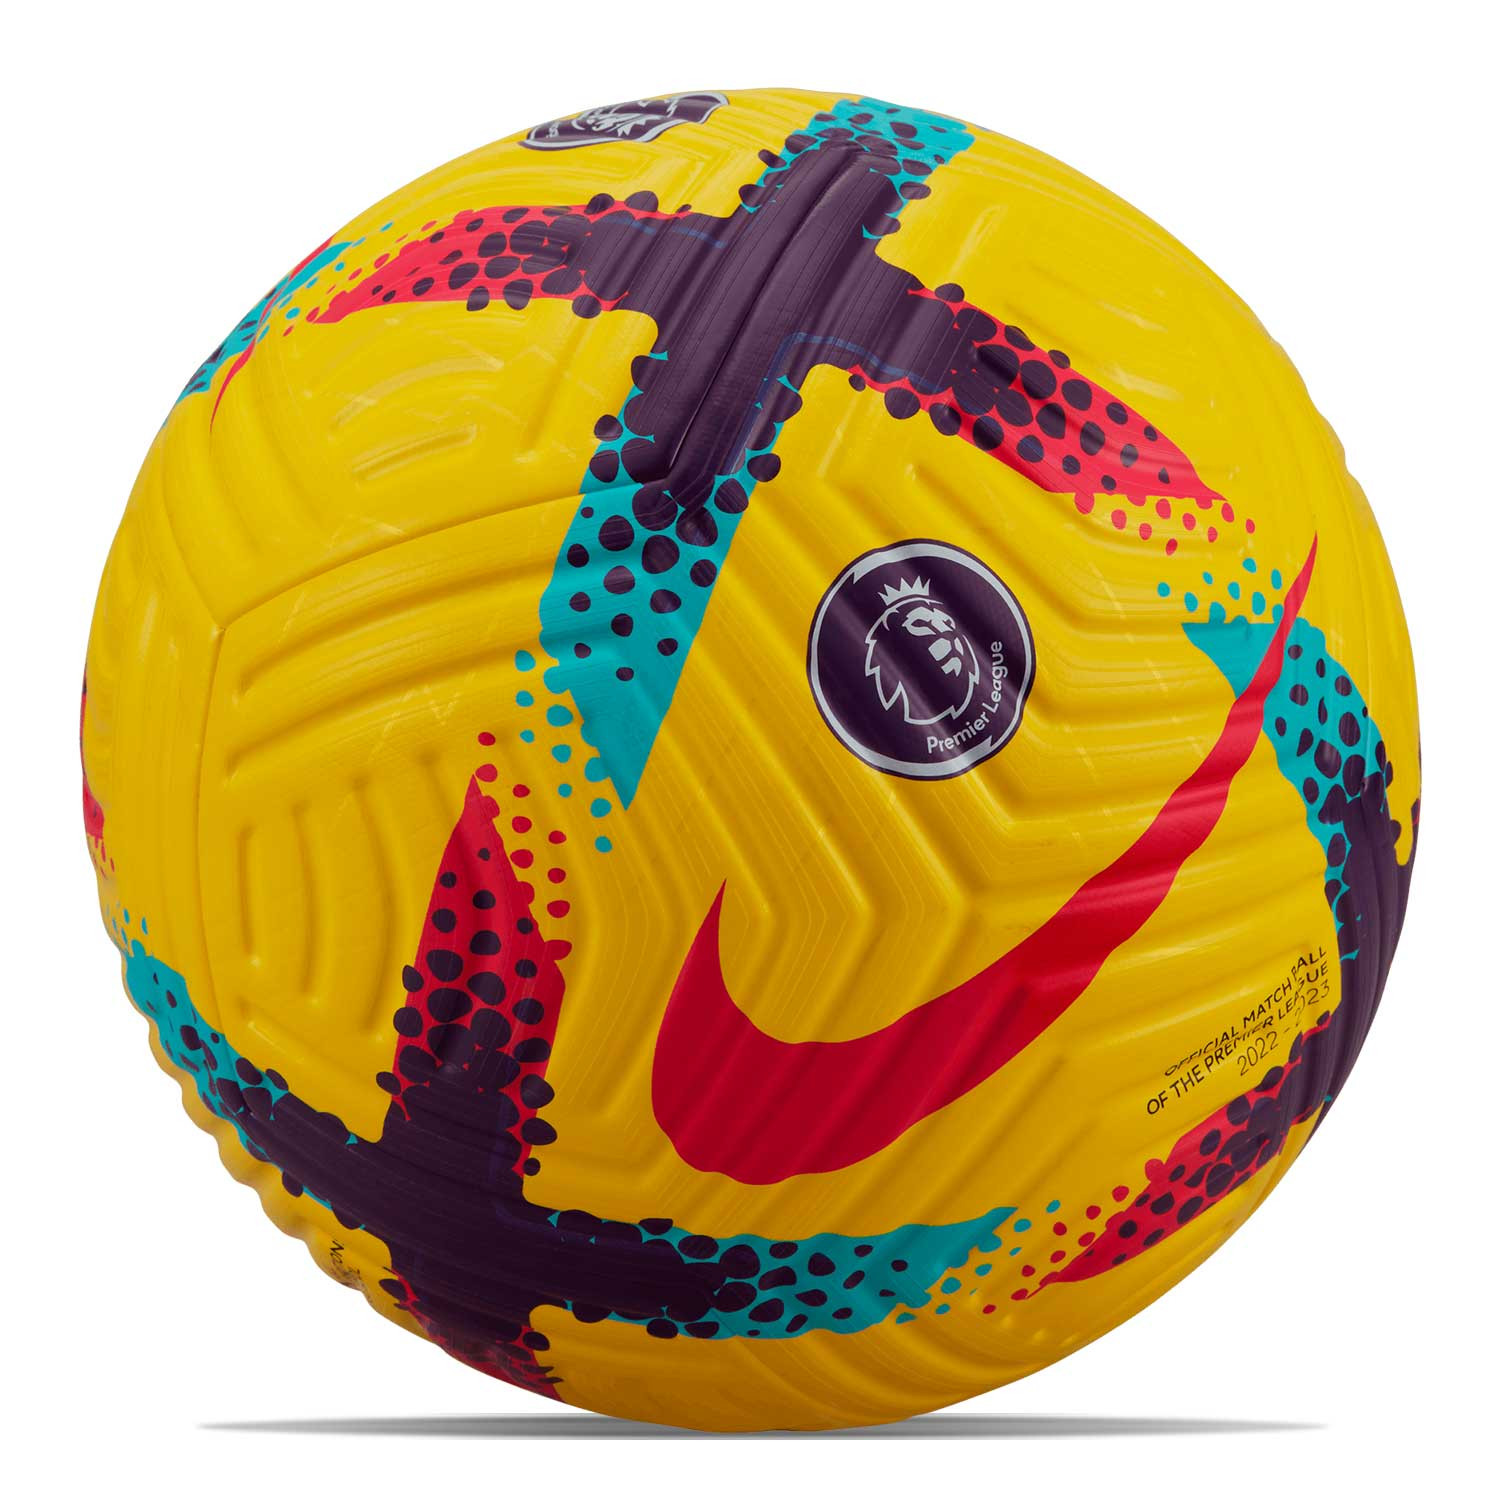 Balón Nike Premier League 2023 2024 Academy talla 5